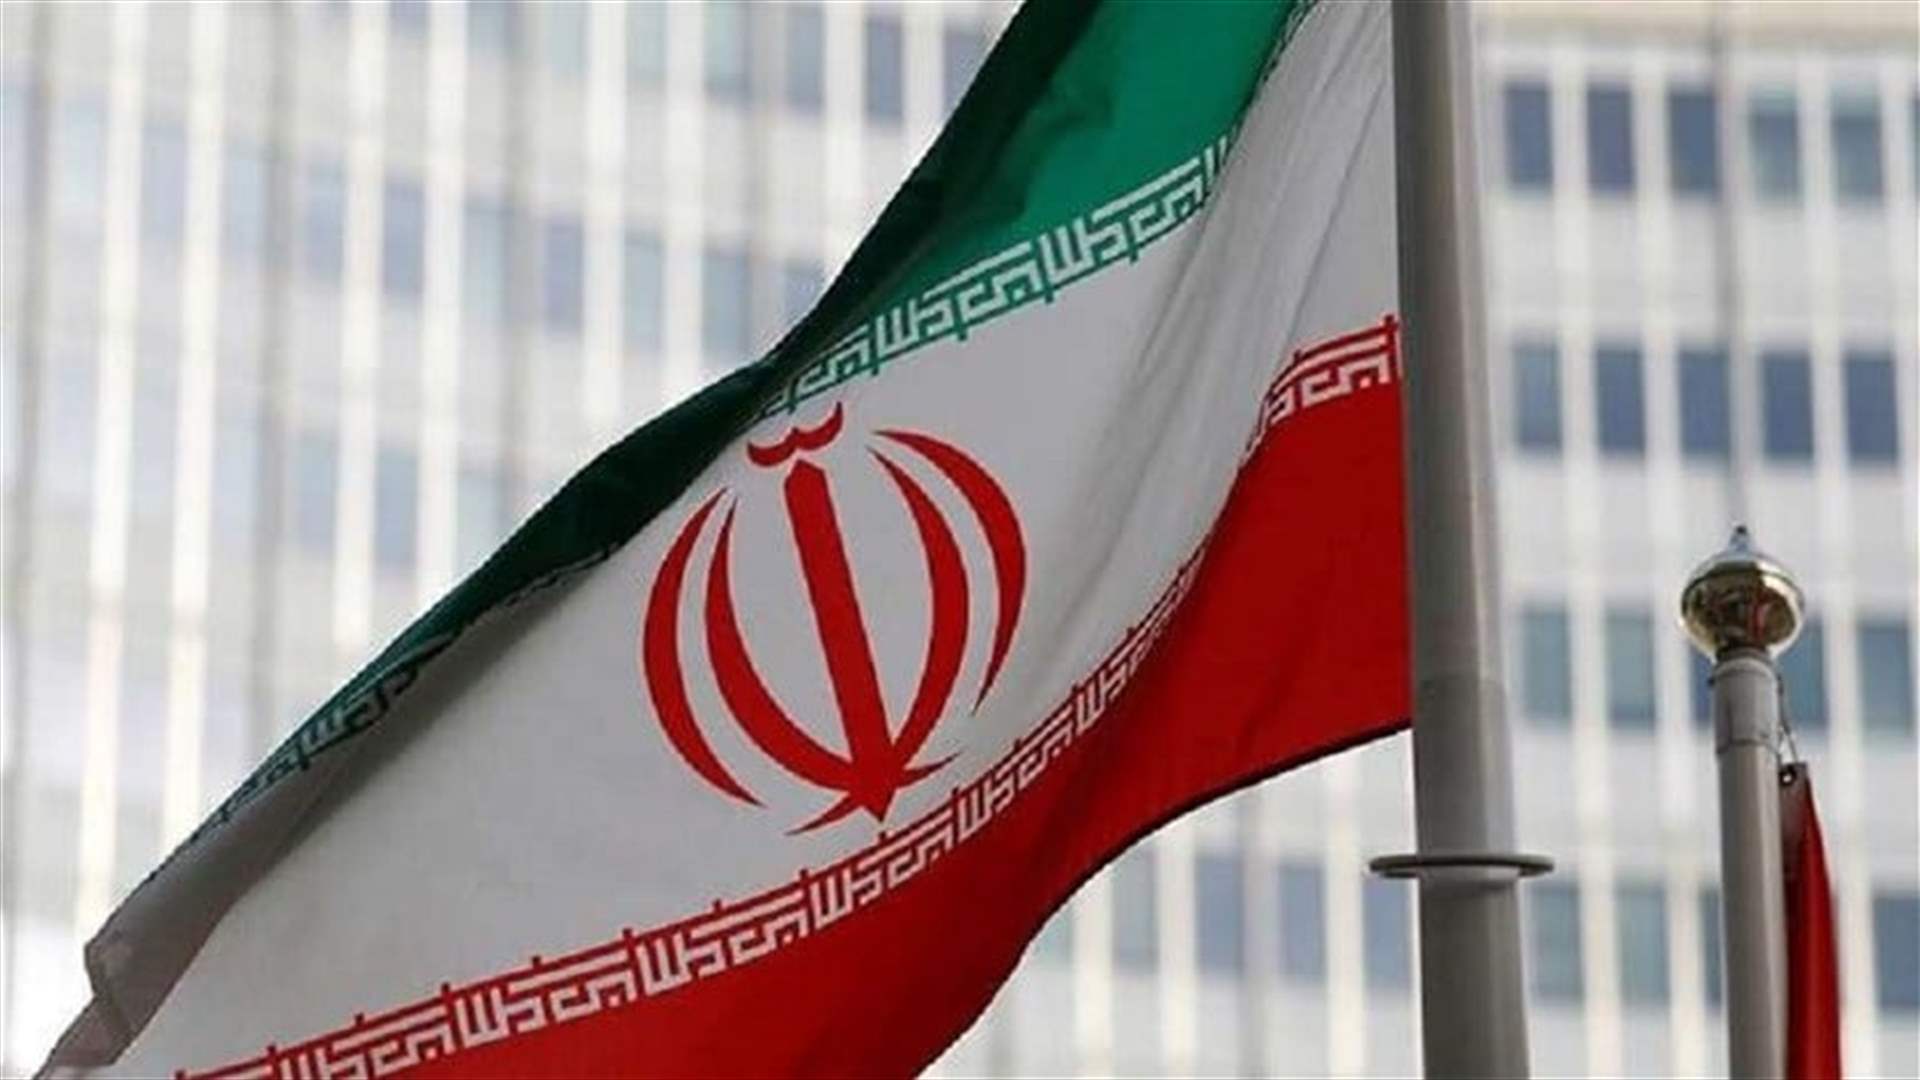 السلطات الإيرانية أوقفت مسؤولين في شركات لدعمهم إضرابات عمالية